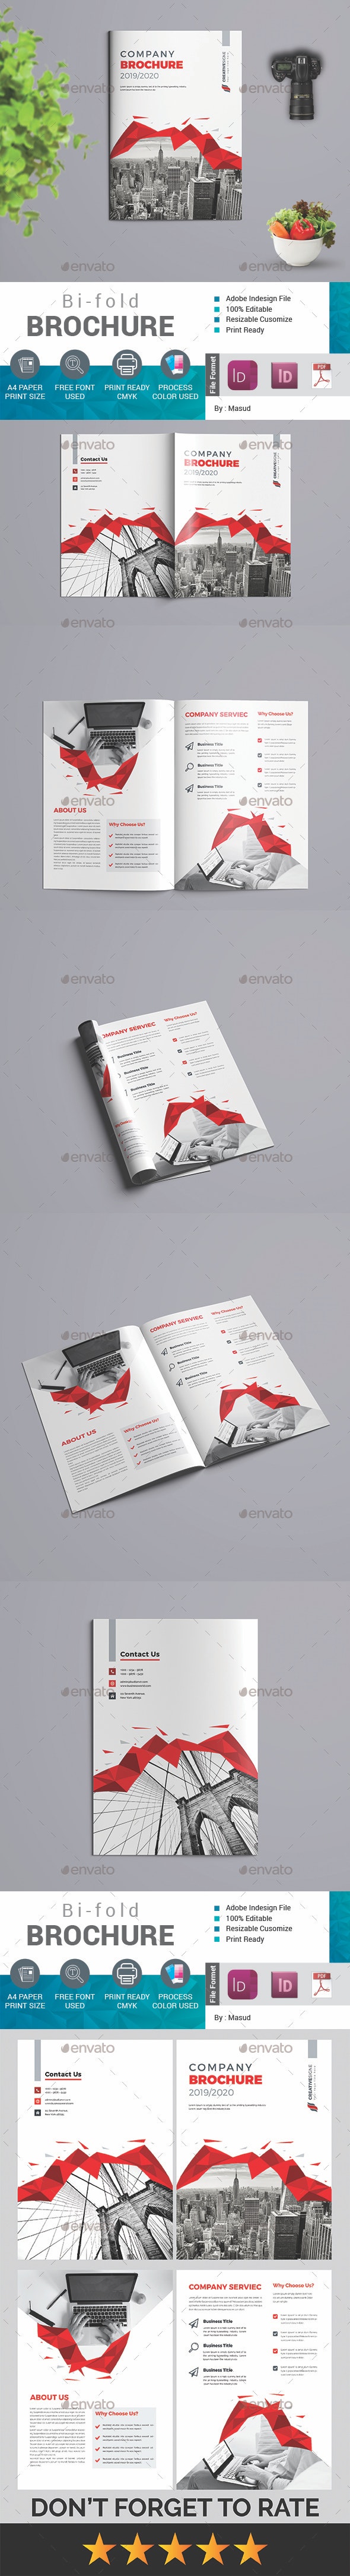 قالب ایندیزاین بروشور Bi-fold Brochure